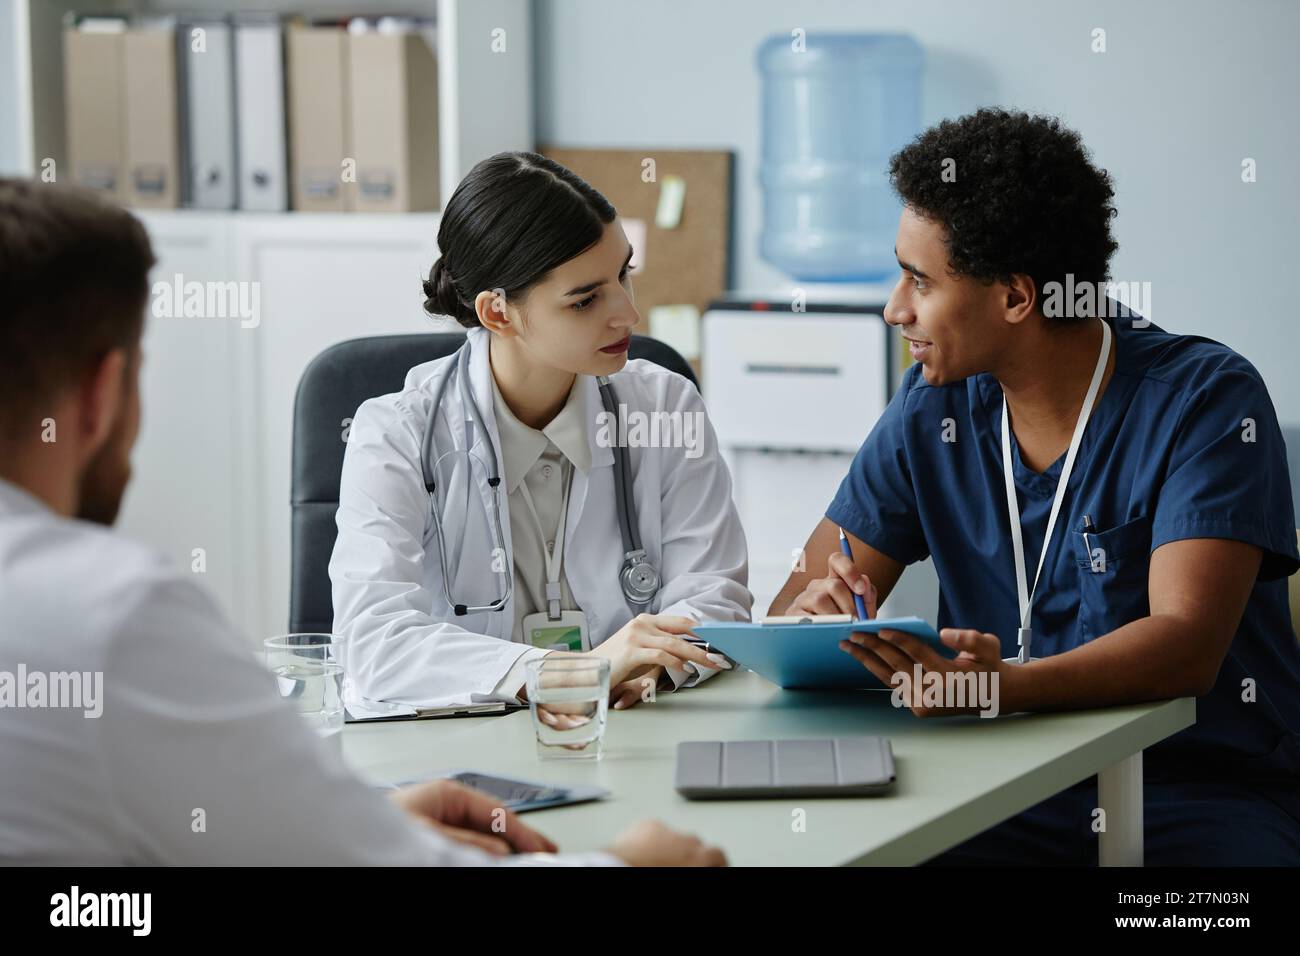 Ritratto laterale di due giovani medici che discutono di questioni di lavoro durante una riunione presso l'ufficio della clinica Foto Stock